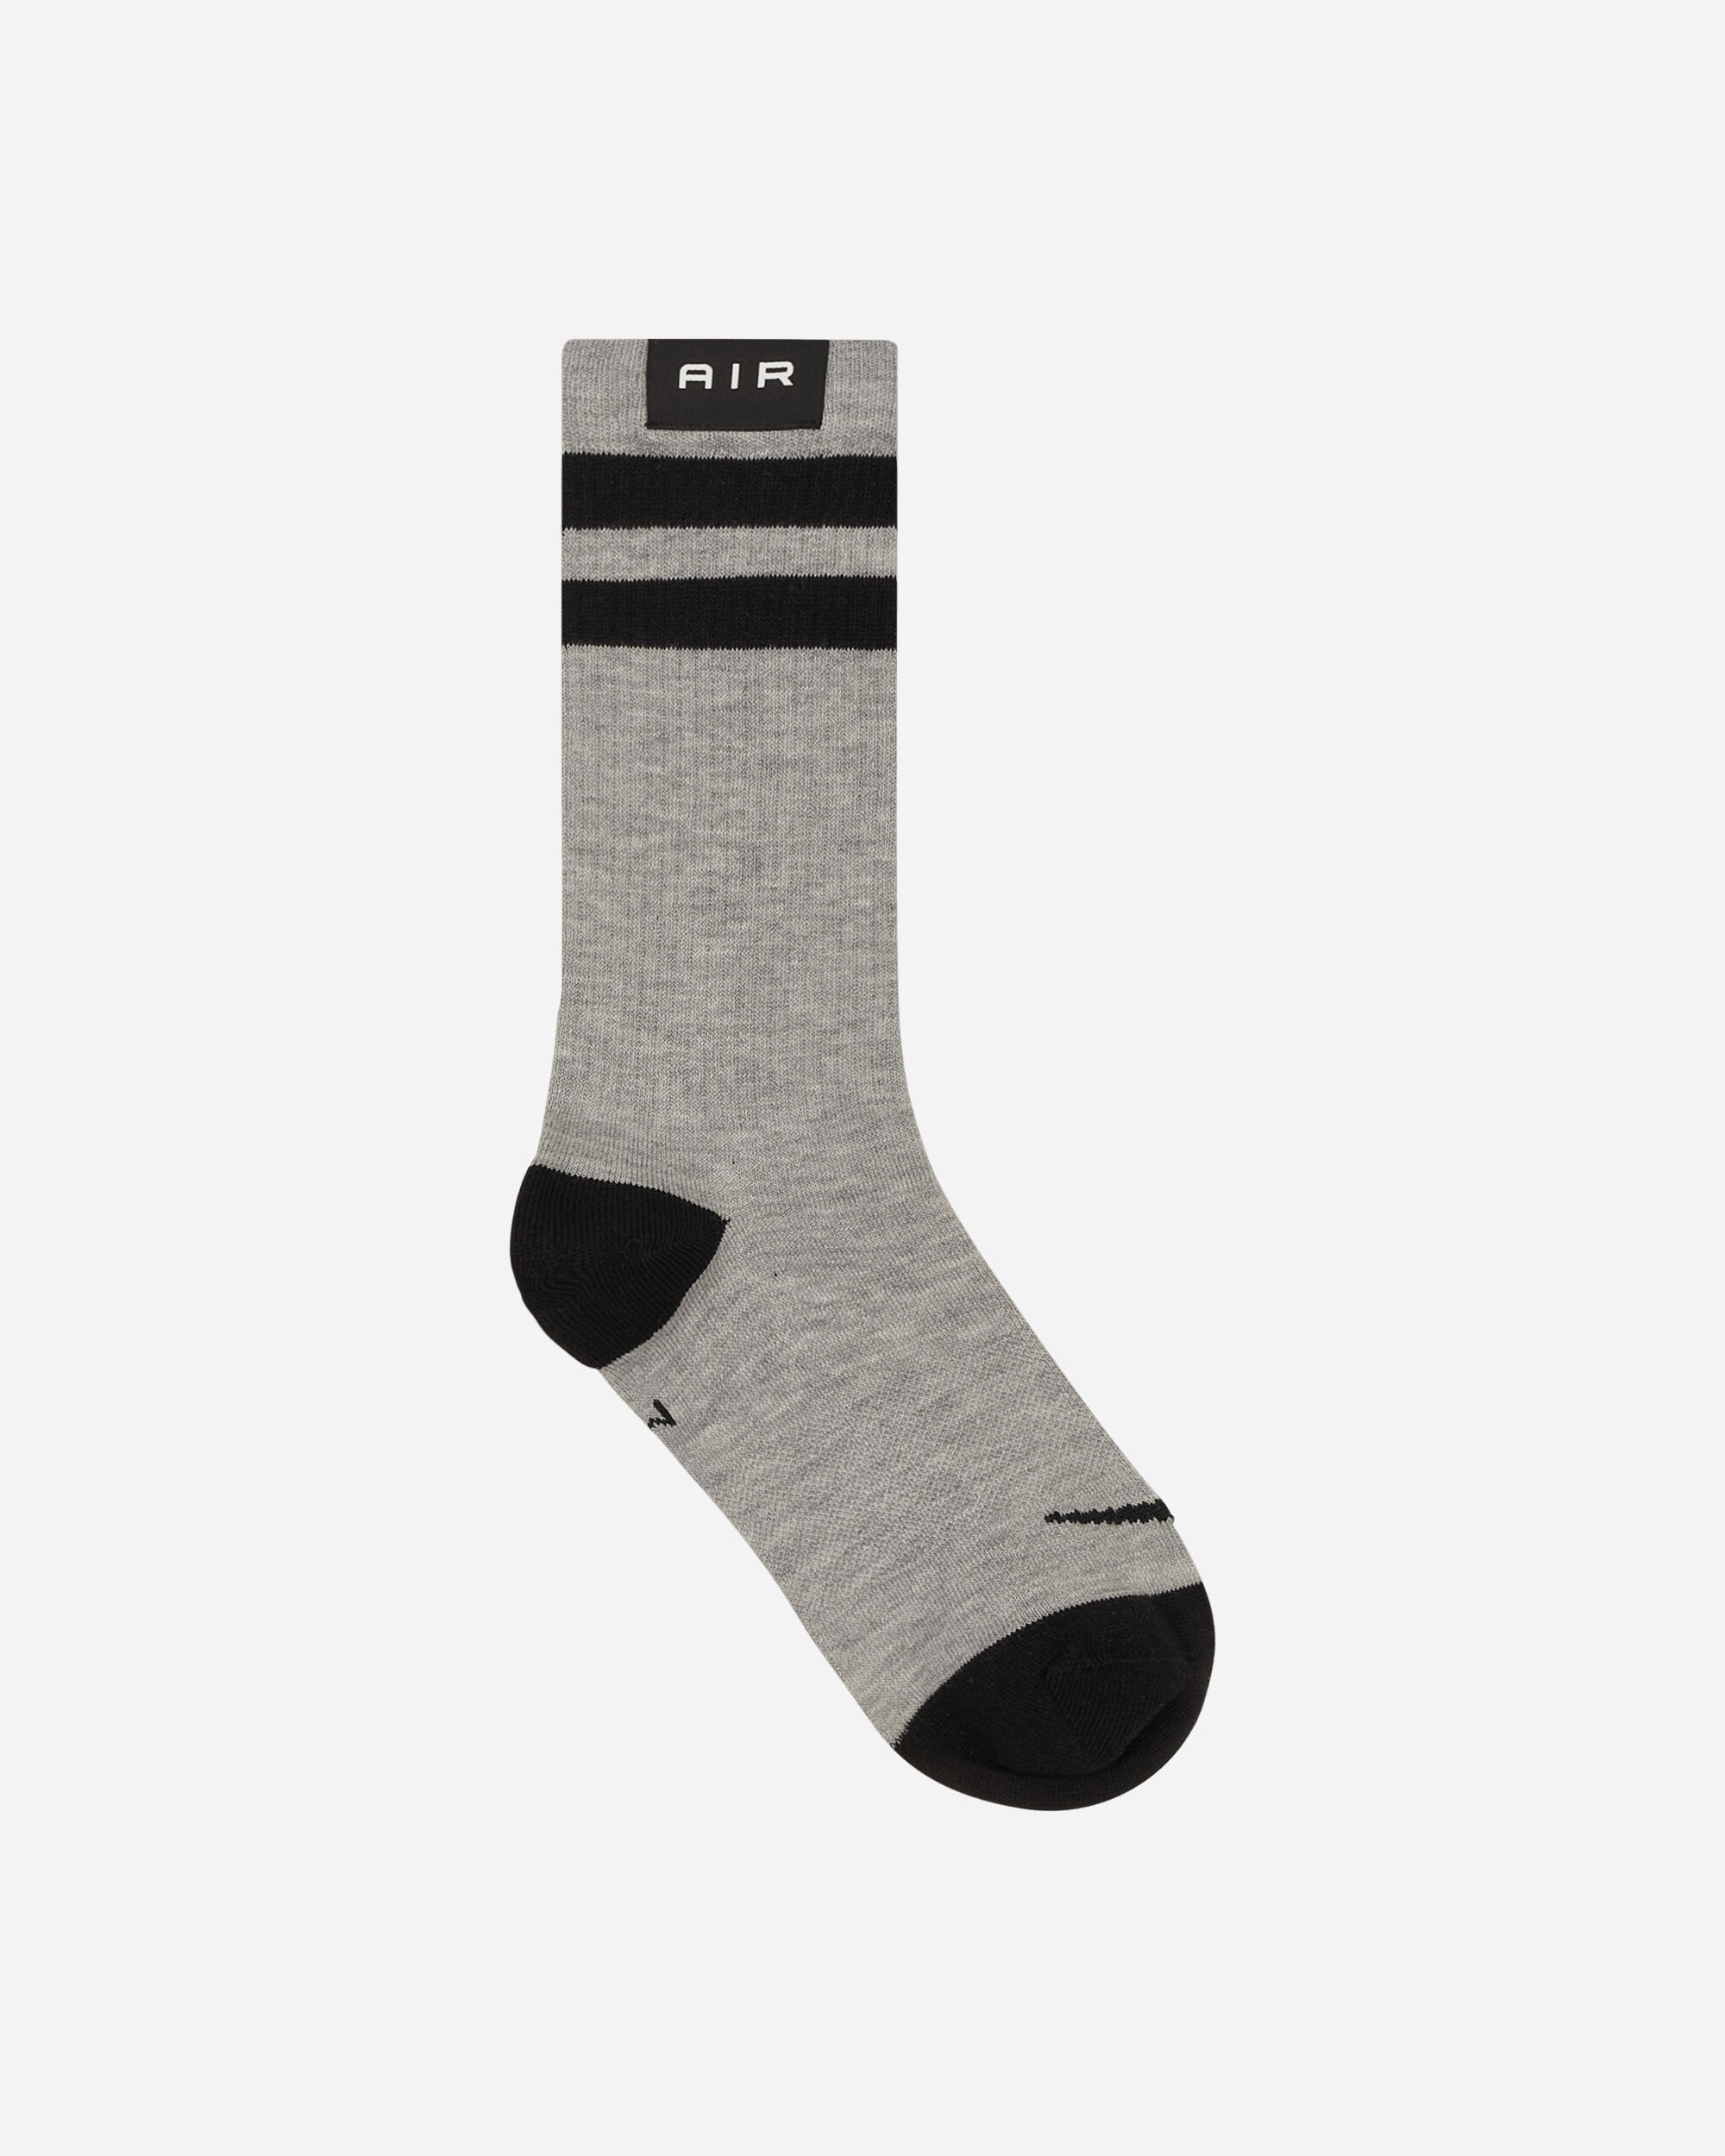 Everyday Essentials Crew Socks Multicolor Grey / Black - 4